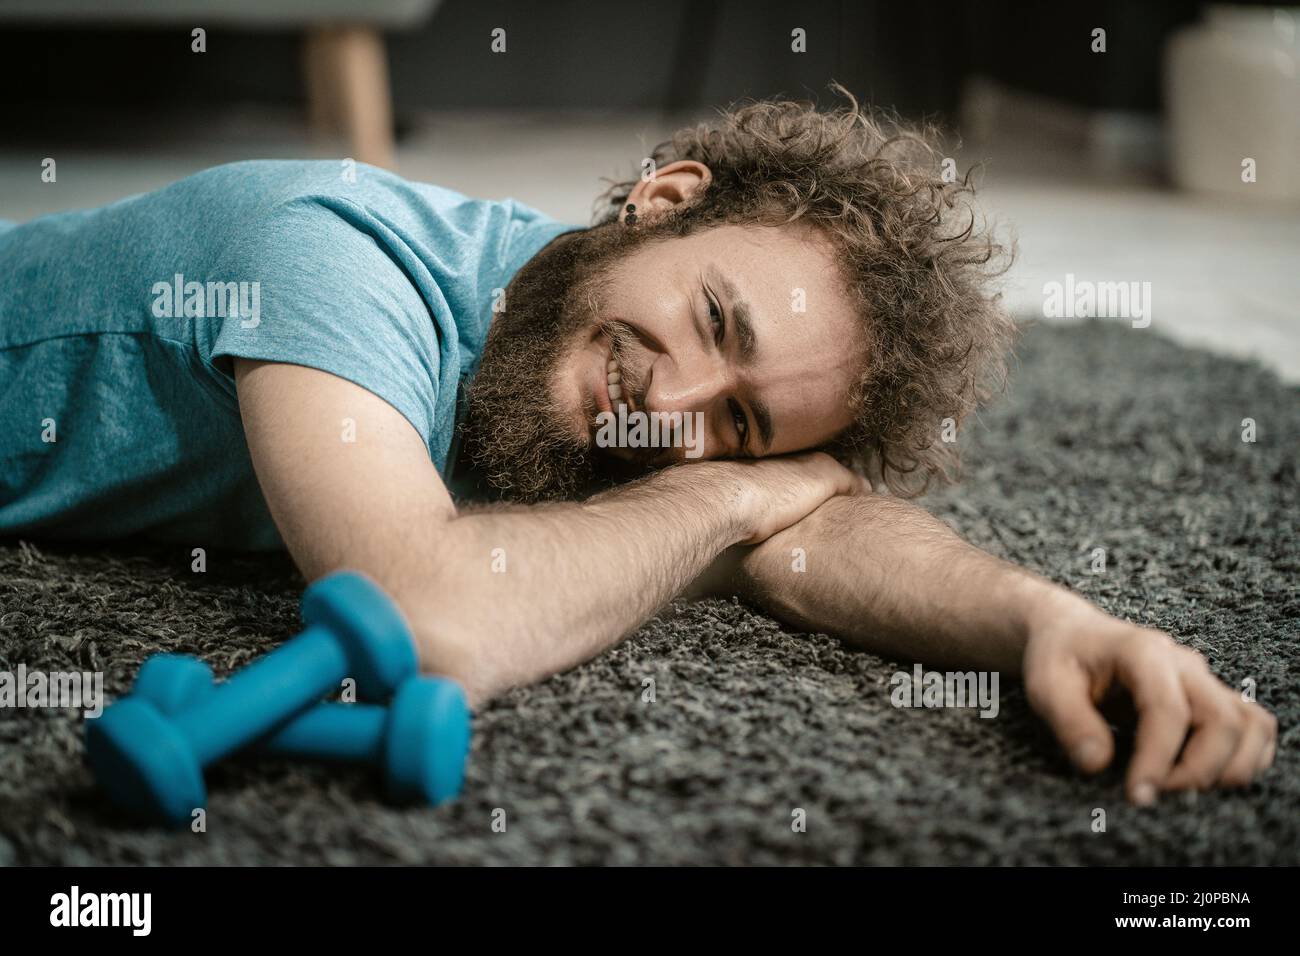 Der Mann liegt entspannt auf dem Teppich neben seinen Hanteln. Der lockige Kerl ist zu entspannt, um Sport zu machen. Nahaufnahme Porträt Stockfoto